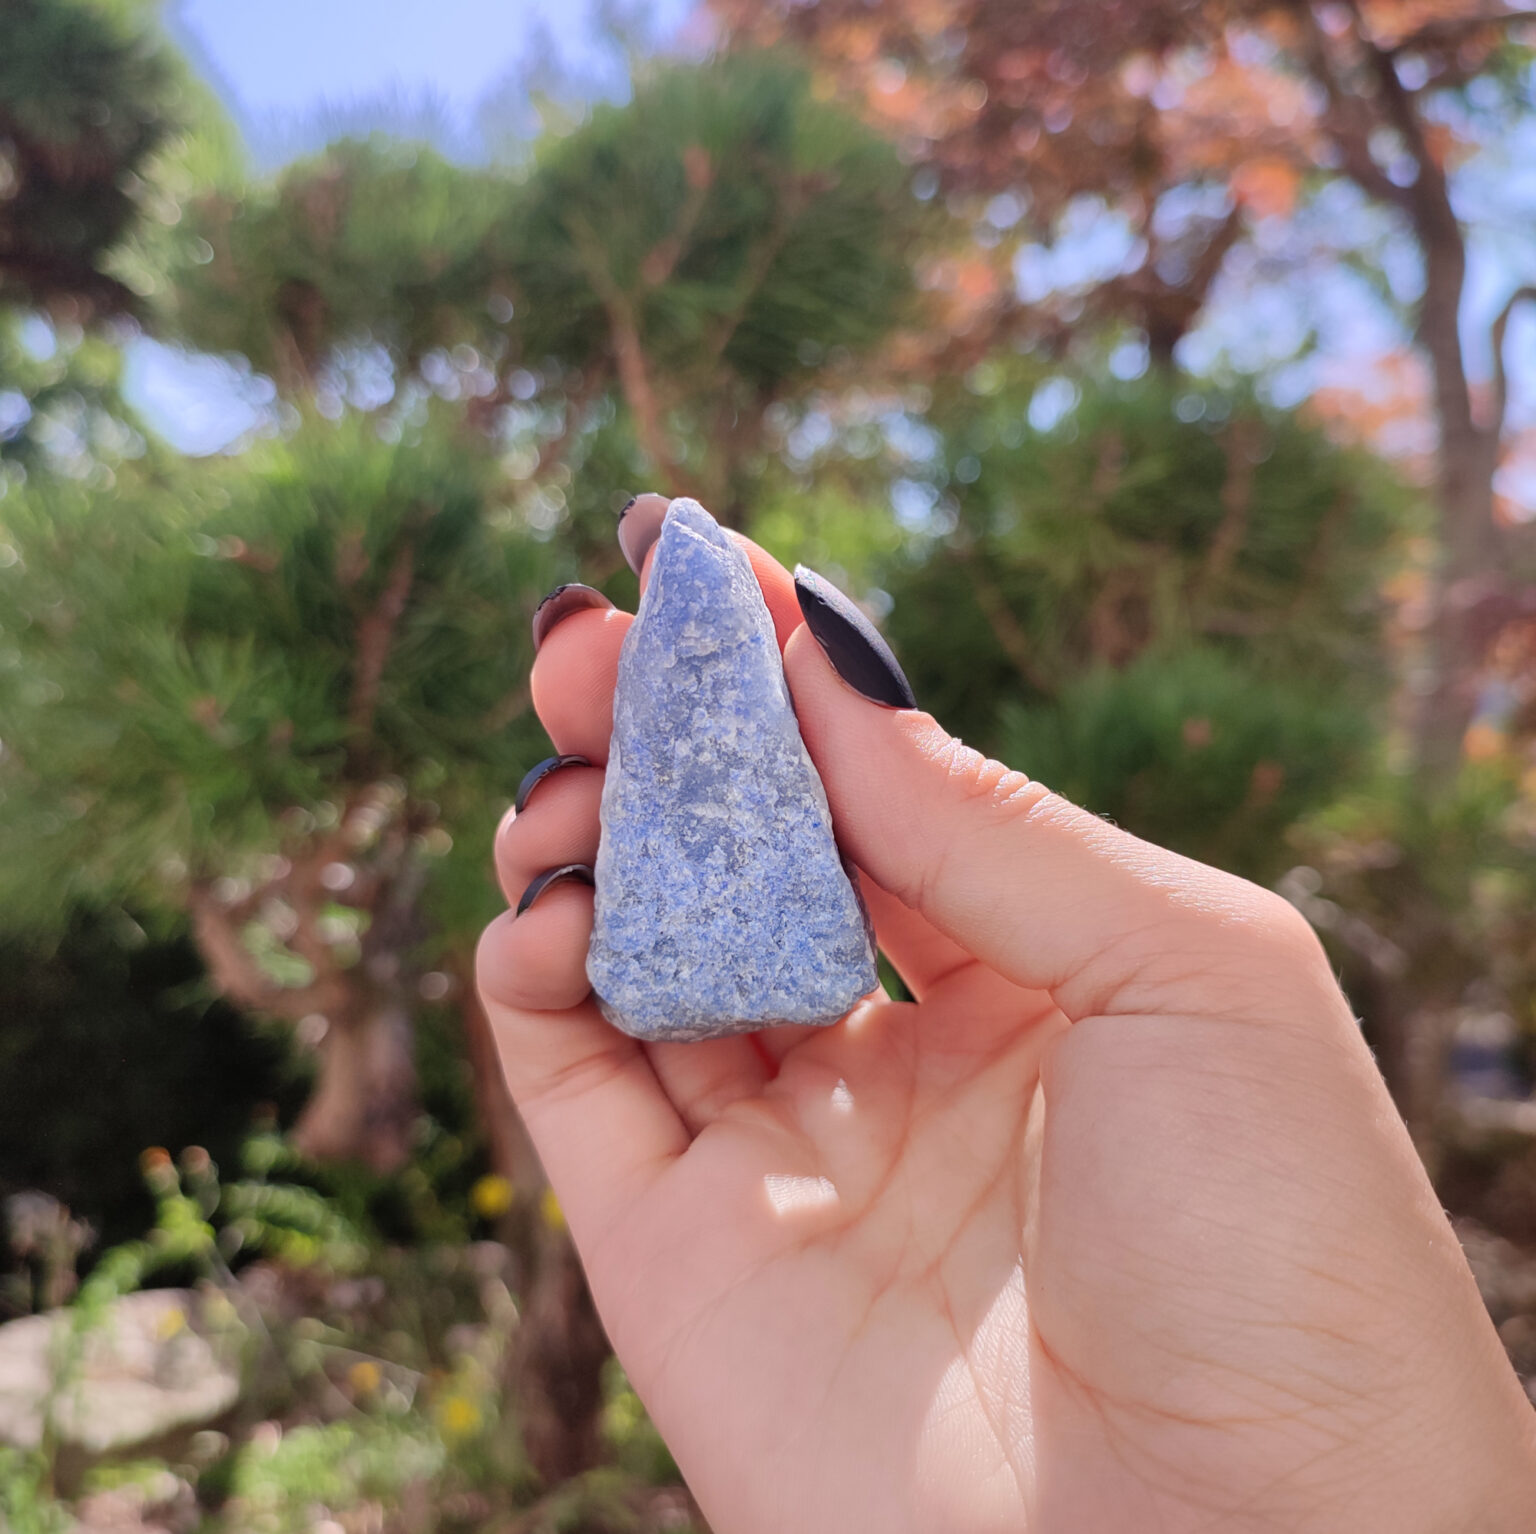 Roher blauer Aventurin Kristall welcher von einer Hand in der Natur gehalten wird.